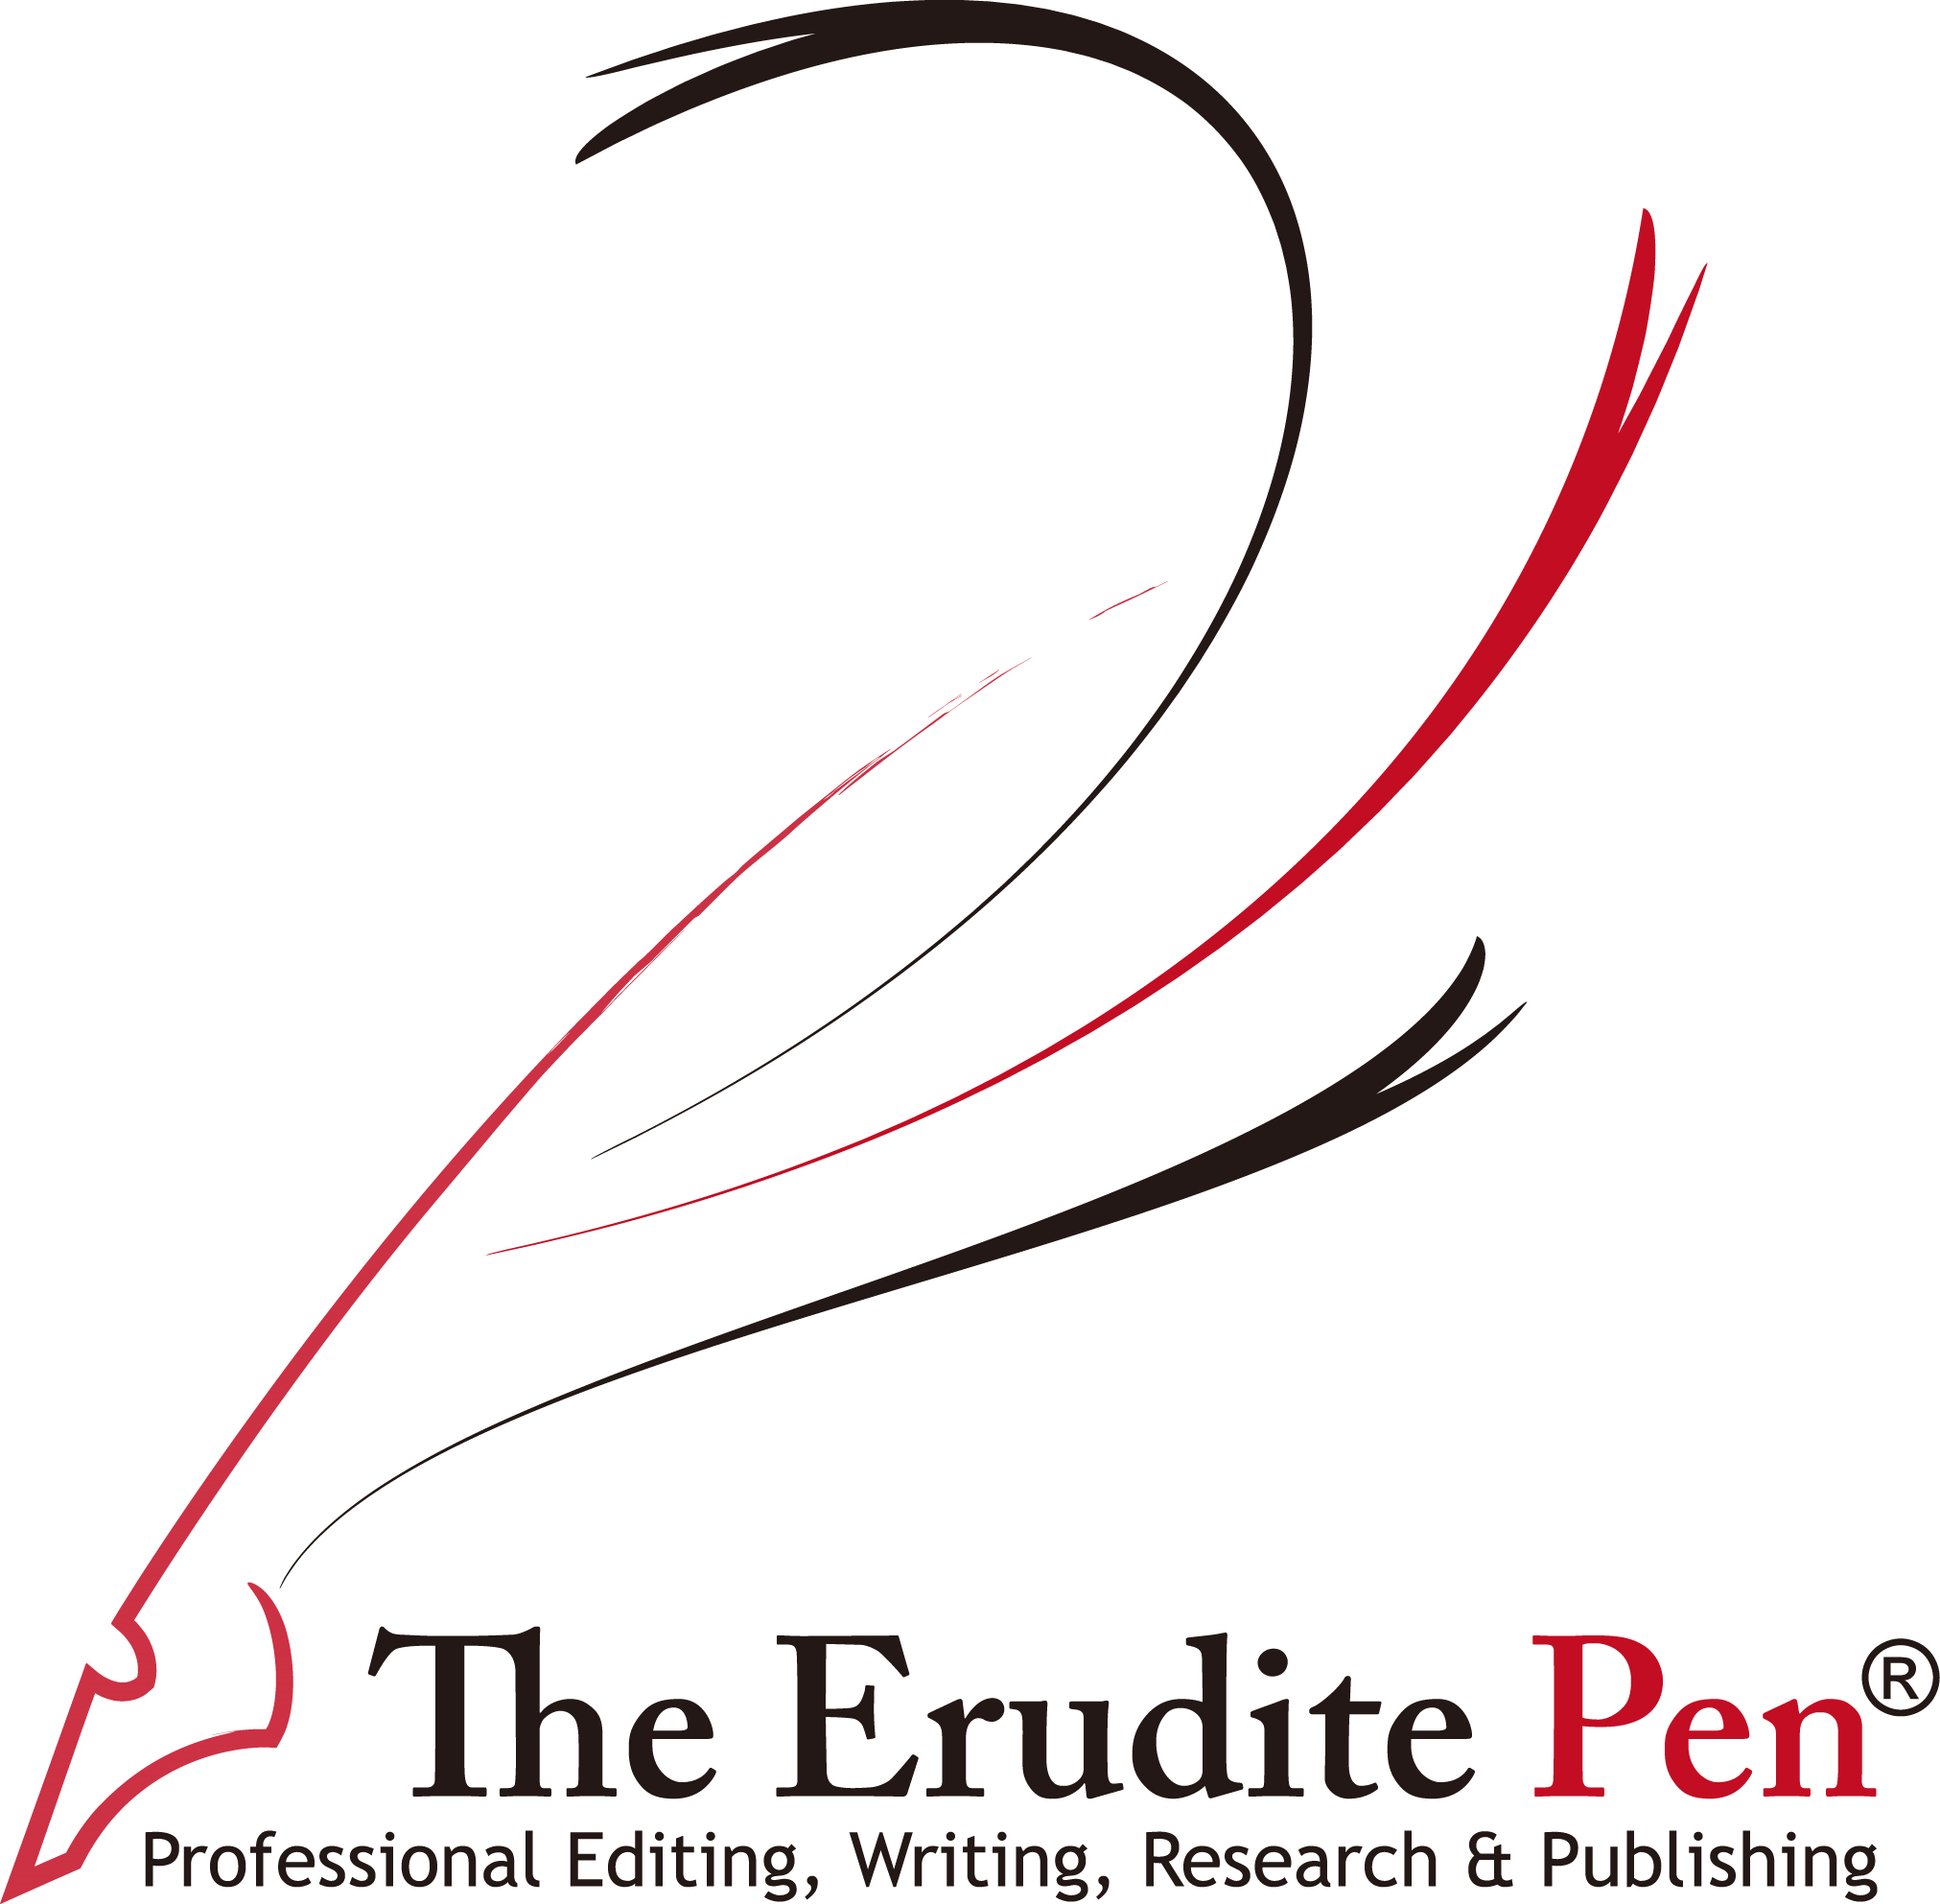 The Erudite Pen